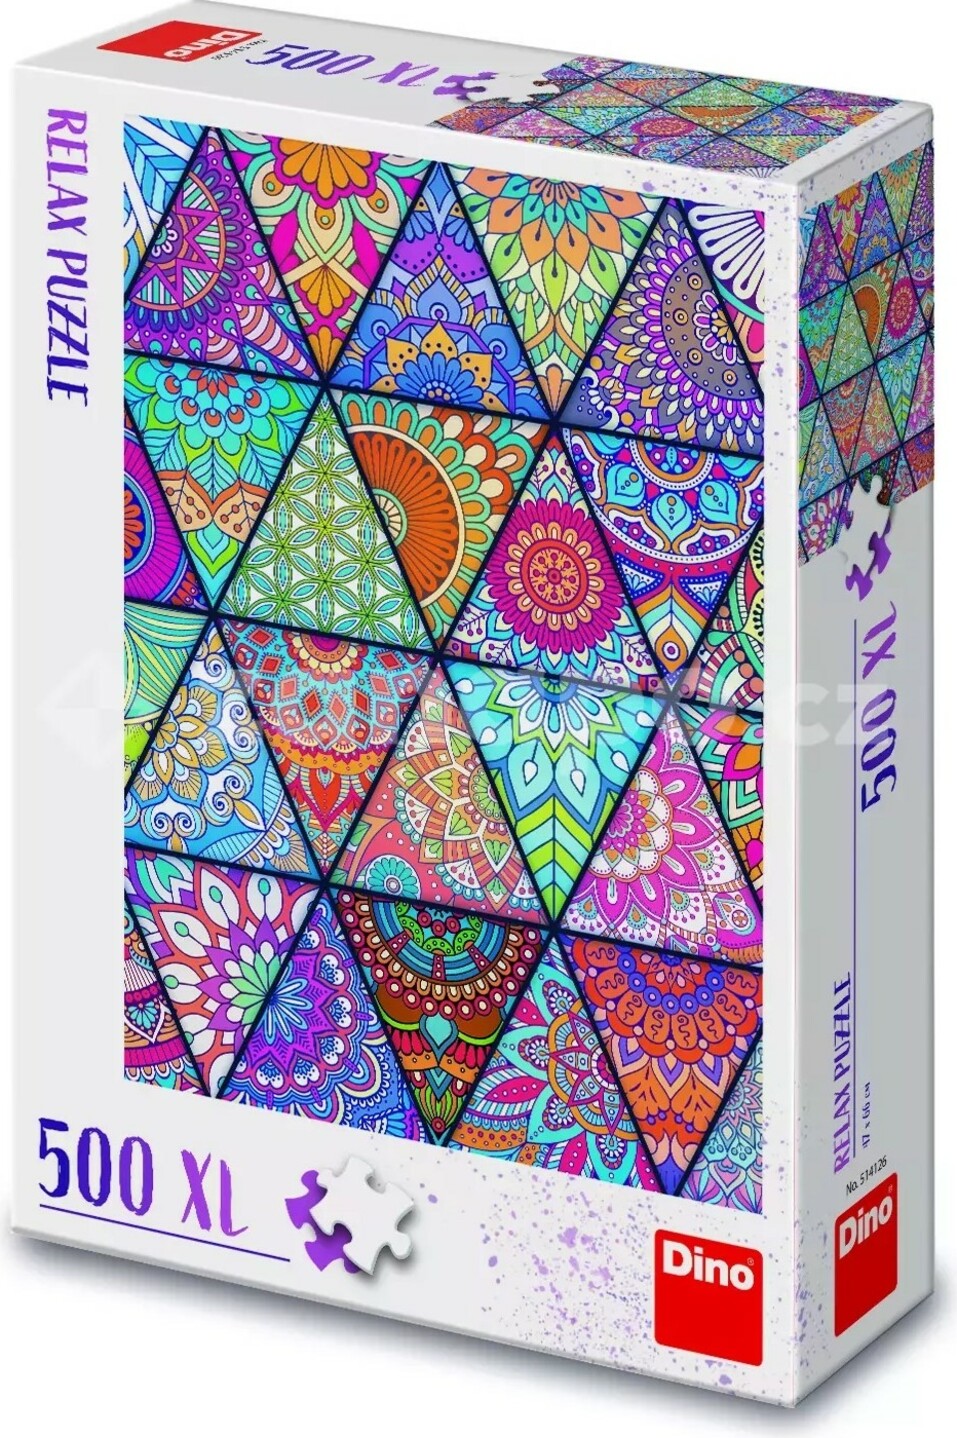 Puzzle Dlaždice 500 xl dílků relax